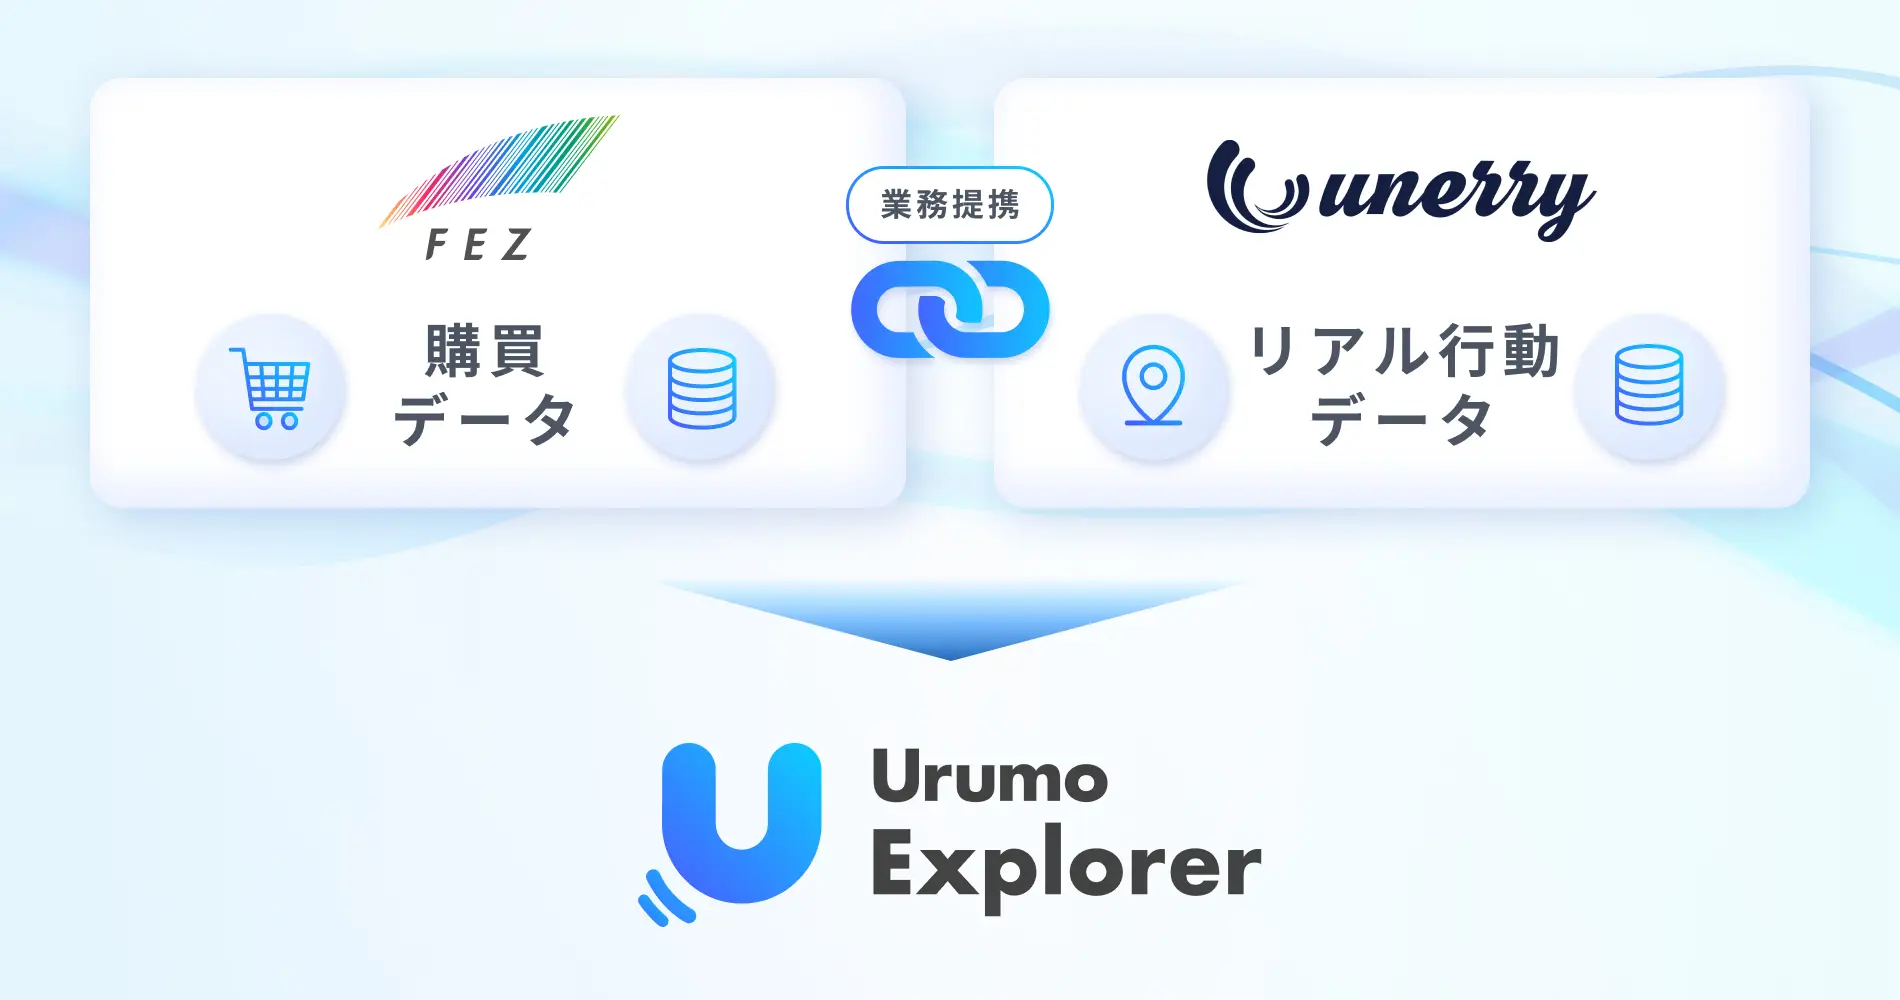 「国際商業ONLINE」にてunerry社との業務提携および『Urumo Explorer』に関する記事が掲載されました